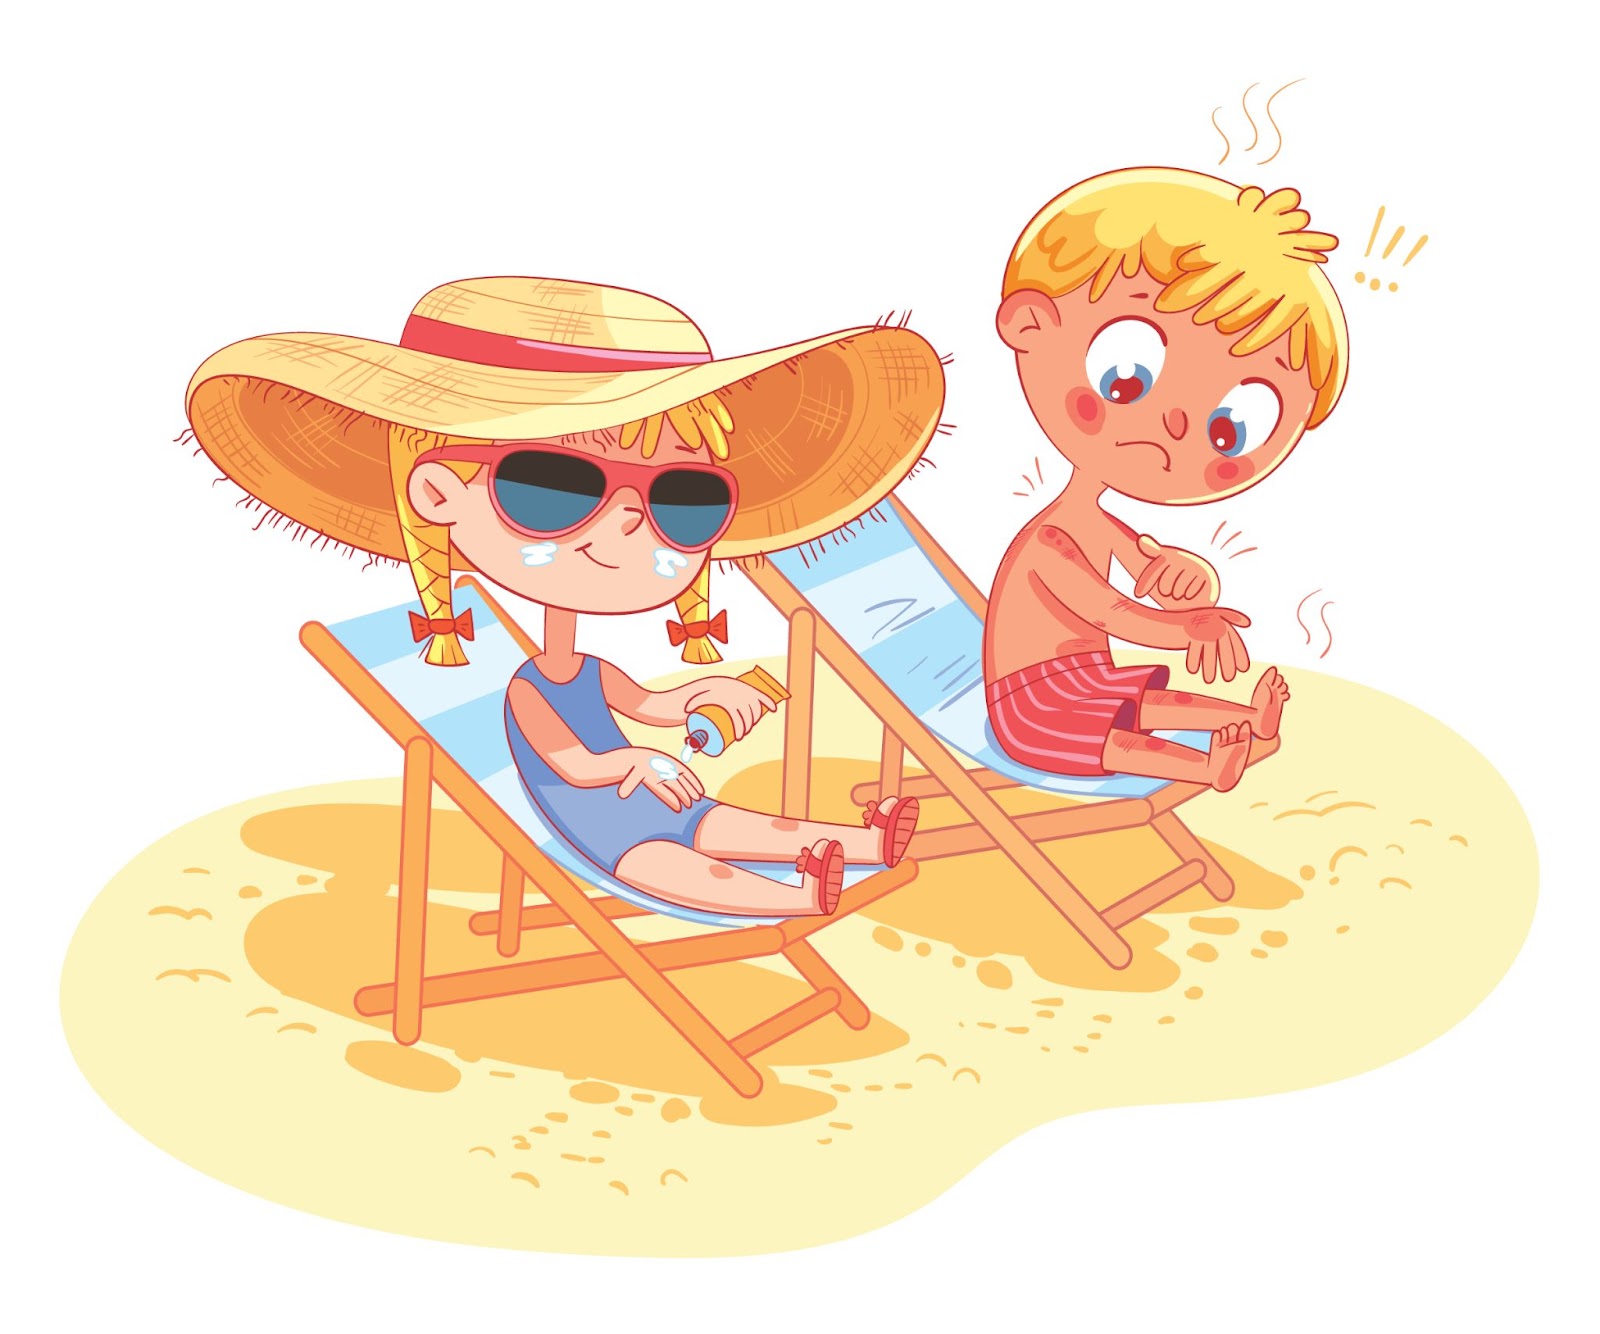 dziewczynka i chłopiec na plaży; pielęgnacja skóry dla dzieci latem, ilustracja